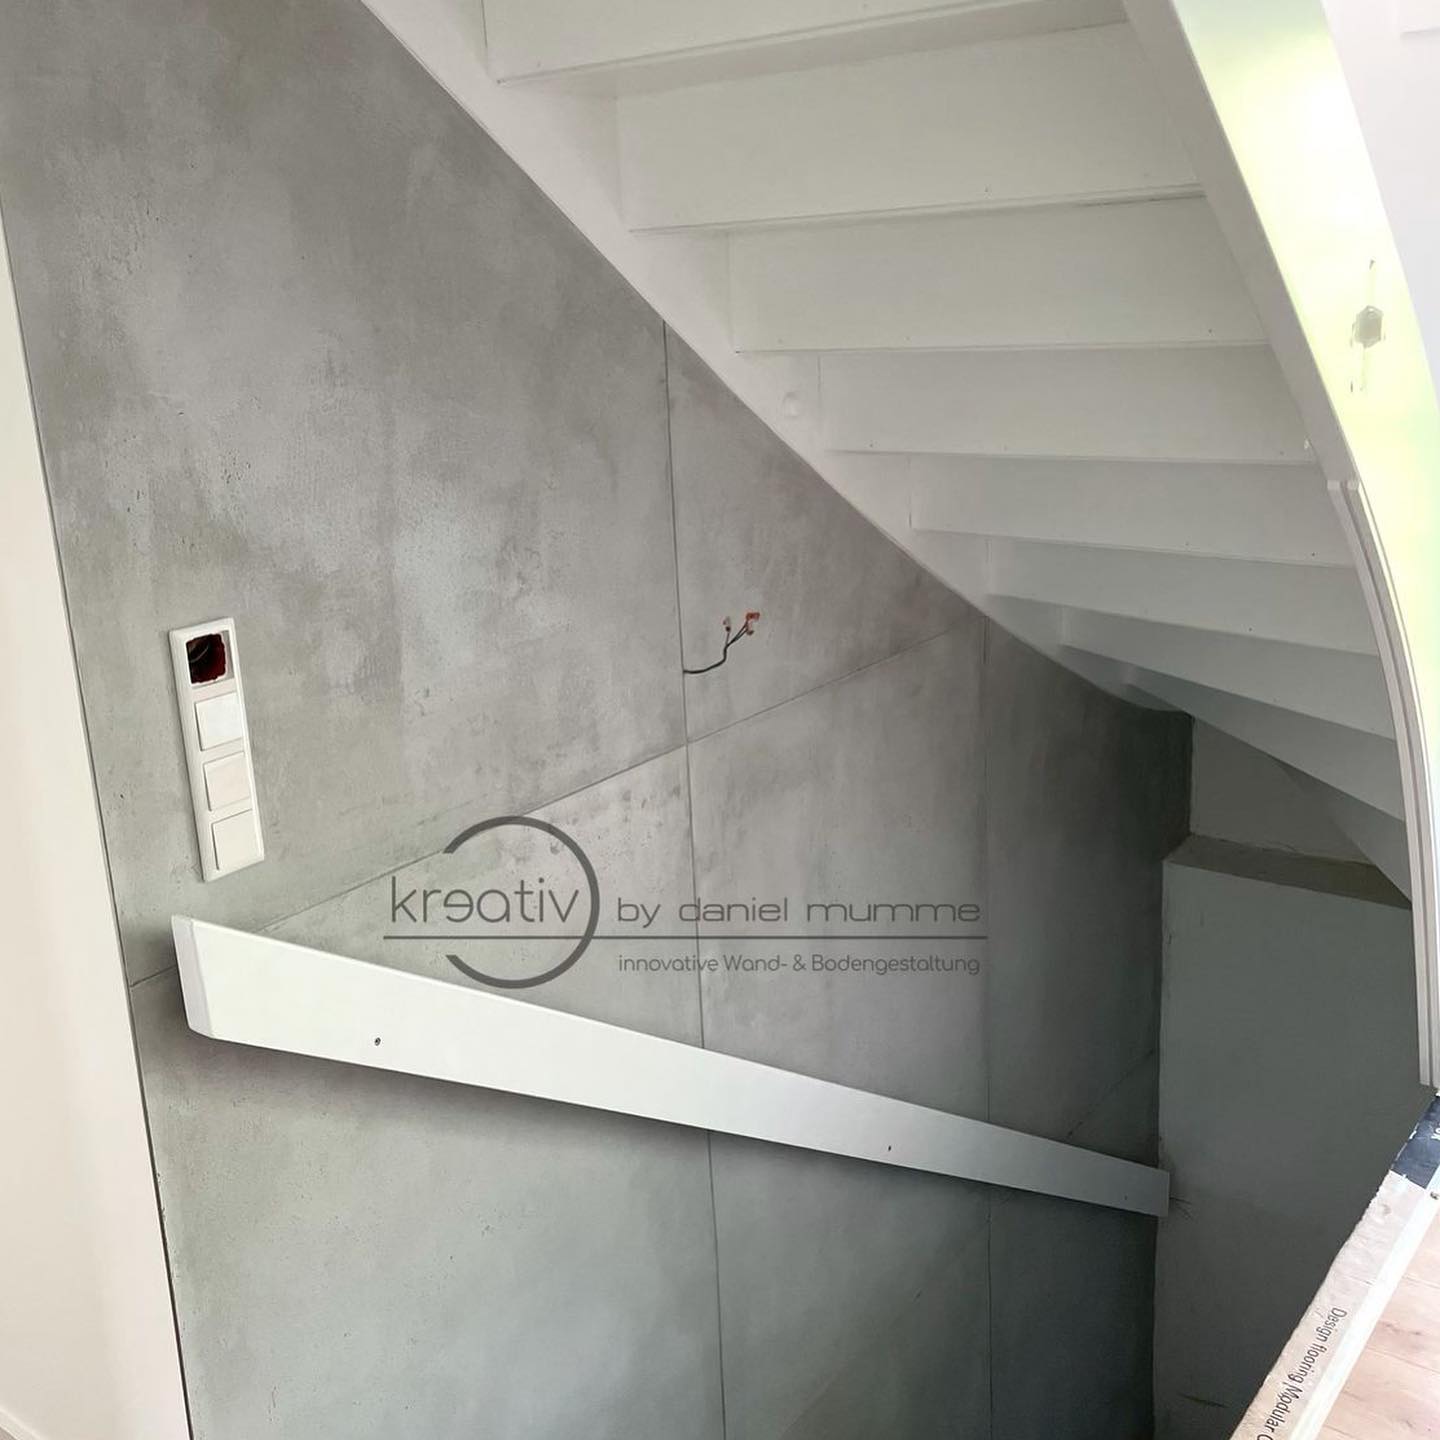 oberflächenwelt on Instagram: "So wird sogar das Treppenhaus zum Blickfang. 😎 #CONCRETE+ by @kreativsanierungsservice . . . #wandgestaltung #gestaltung #oberflächenwelt #novacolor #innendesign #schönerwohnen #malerundlackierer #lustaufhandwerk #oberflaechenwelt #renovieren #oberflächengestaltung #hausbau #betonoptik #beton #inneneinrichtung #bauherren2021 #hausbau2021 #hausbau #urbanite #treppenhaus #treppe #stairs #staircase"